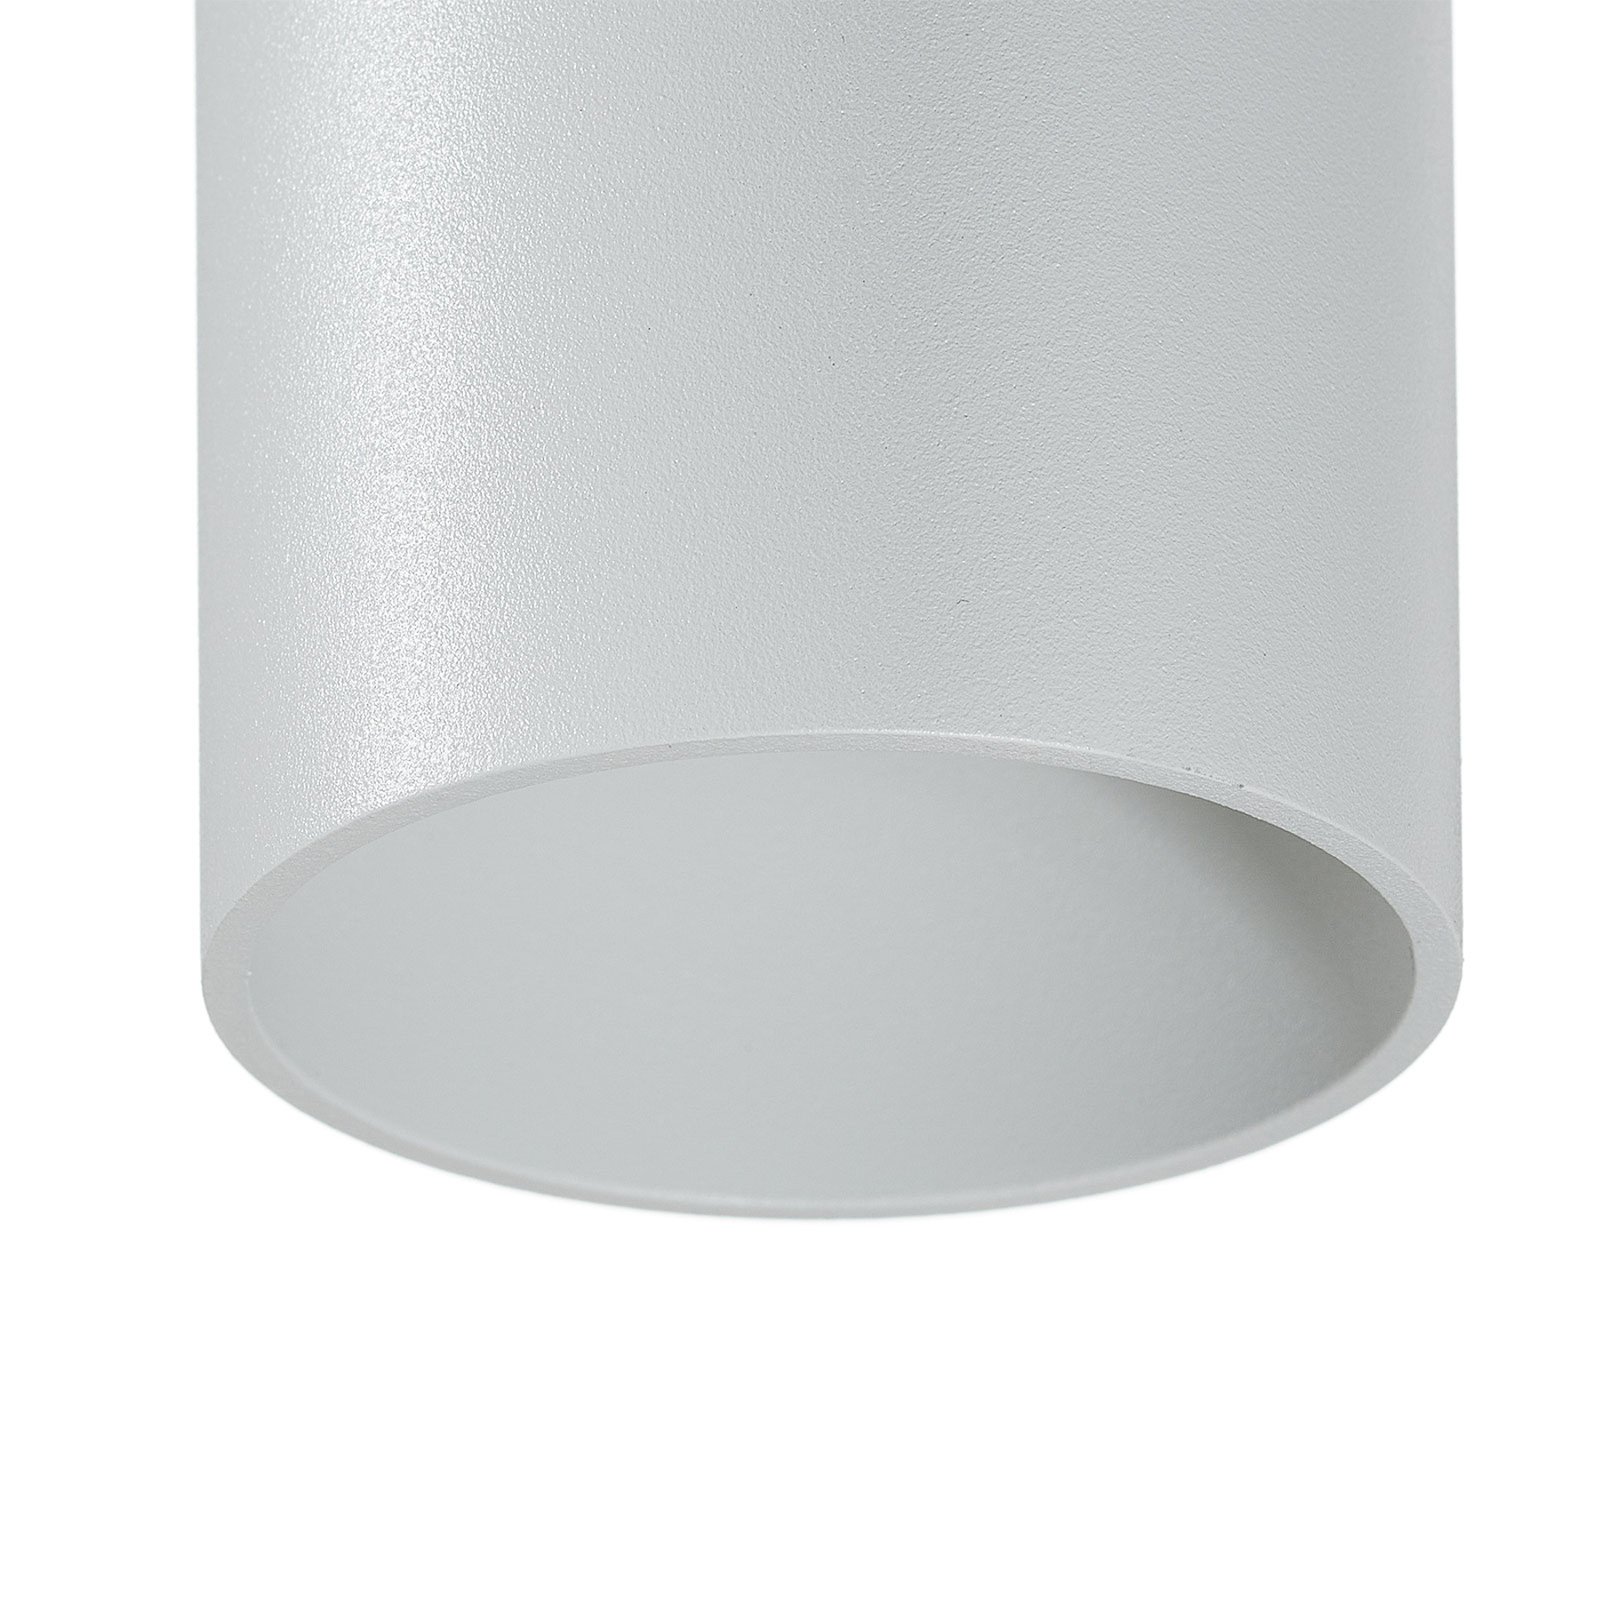 WEVER & DUCRÉ Ray mini 2.0 zidna svjetiljka bijela